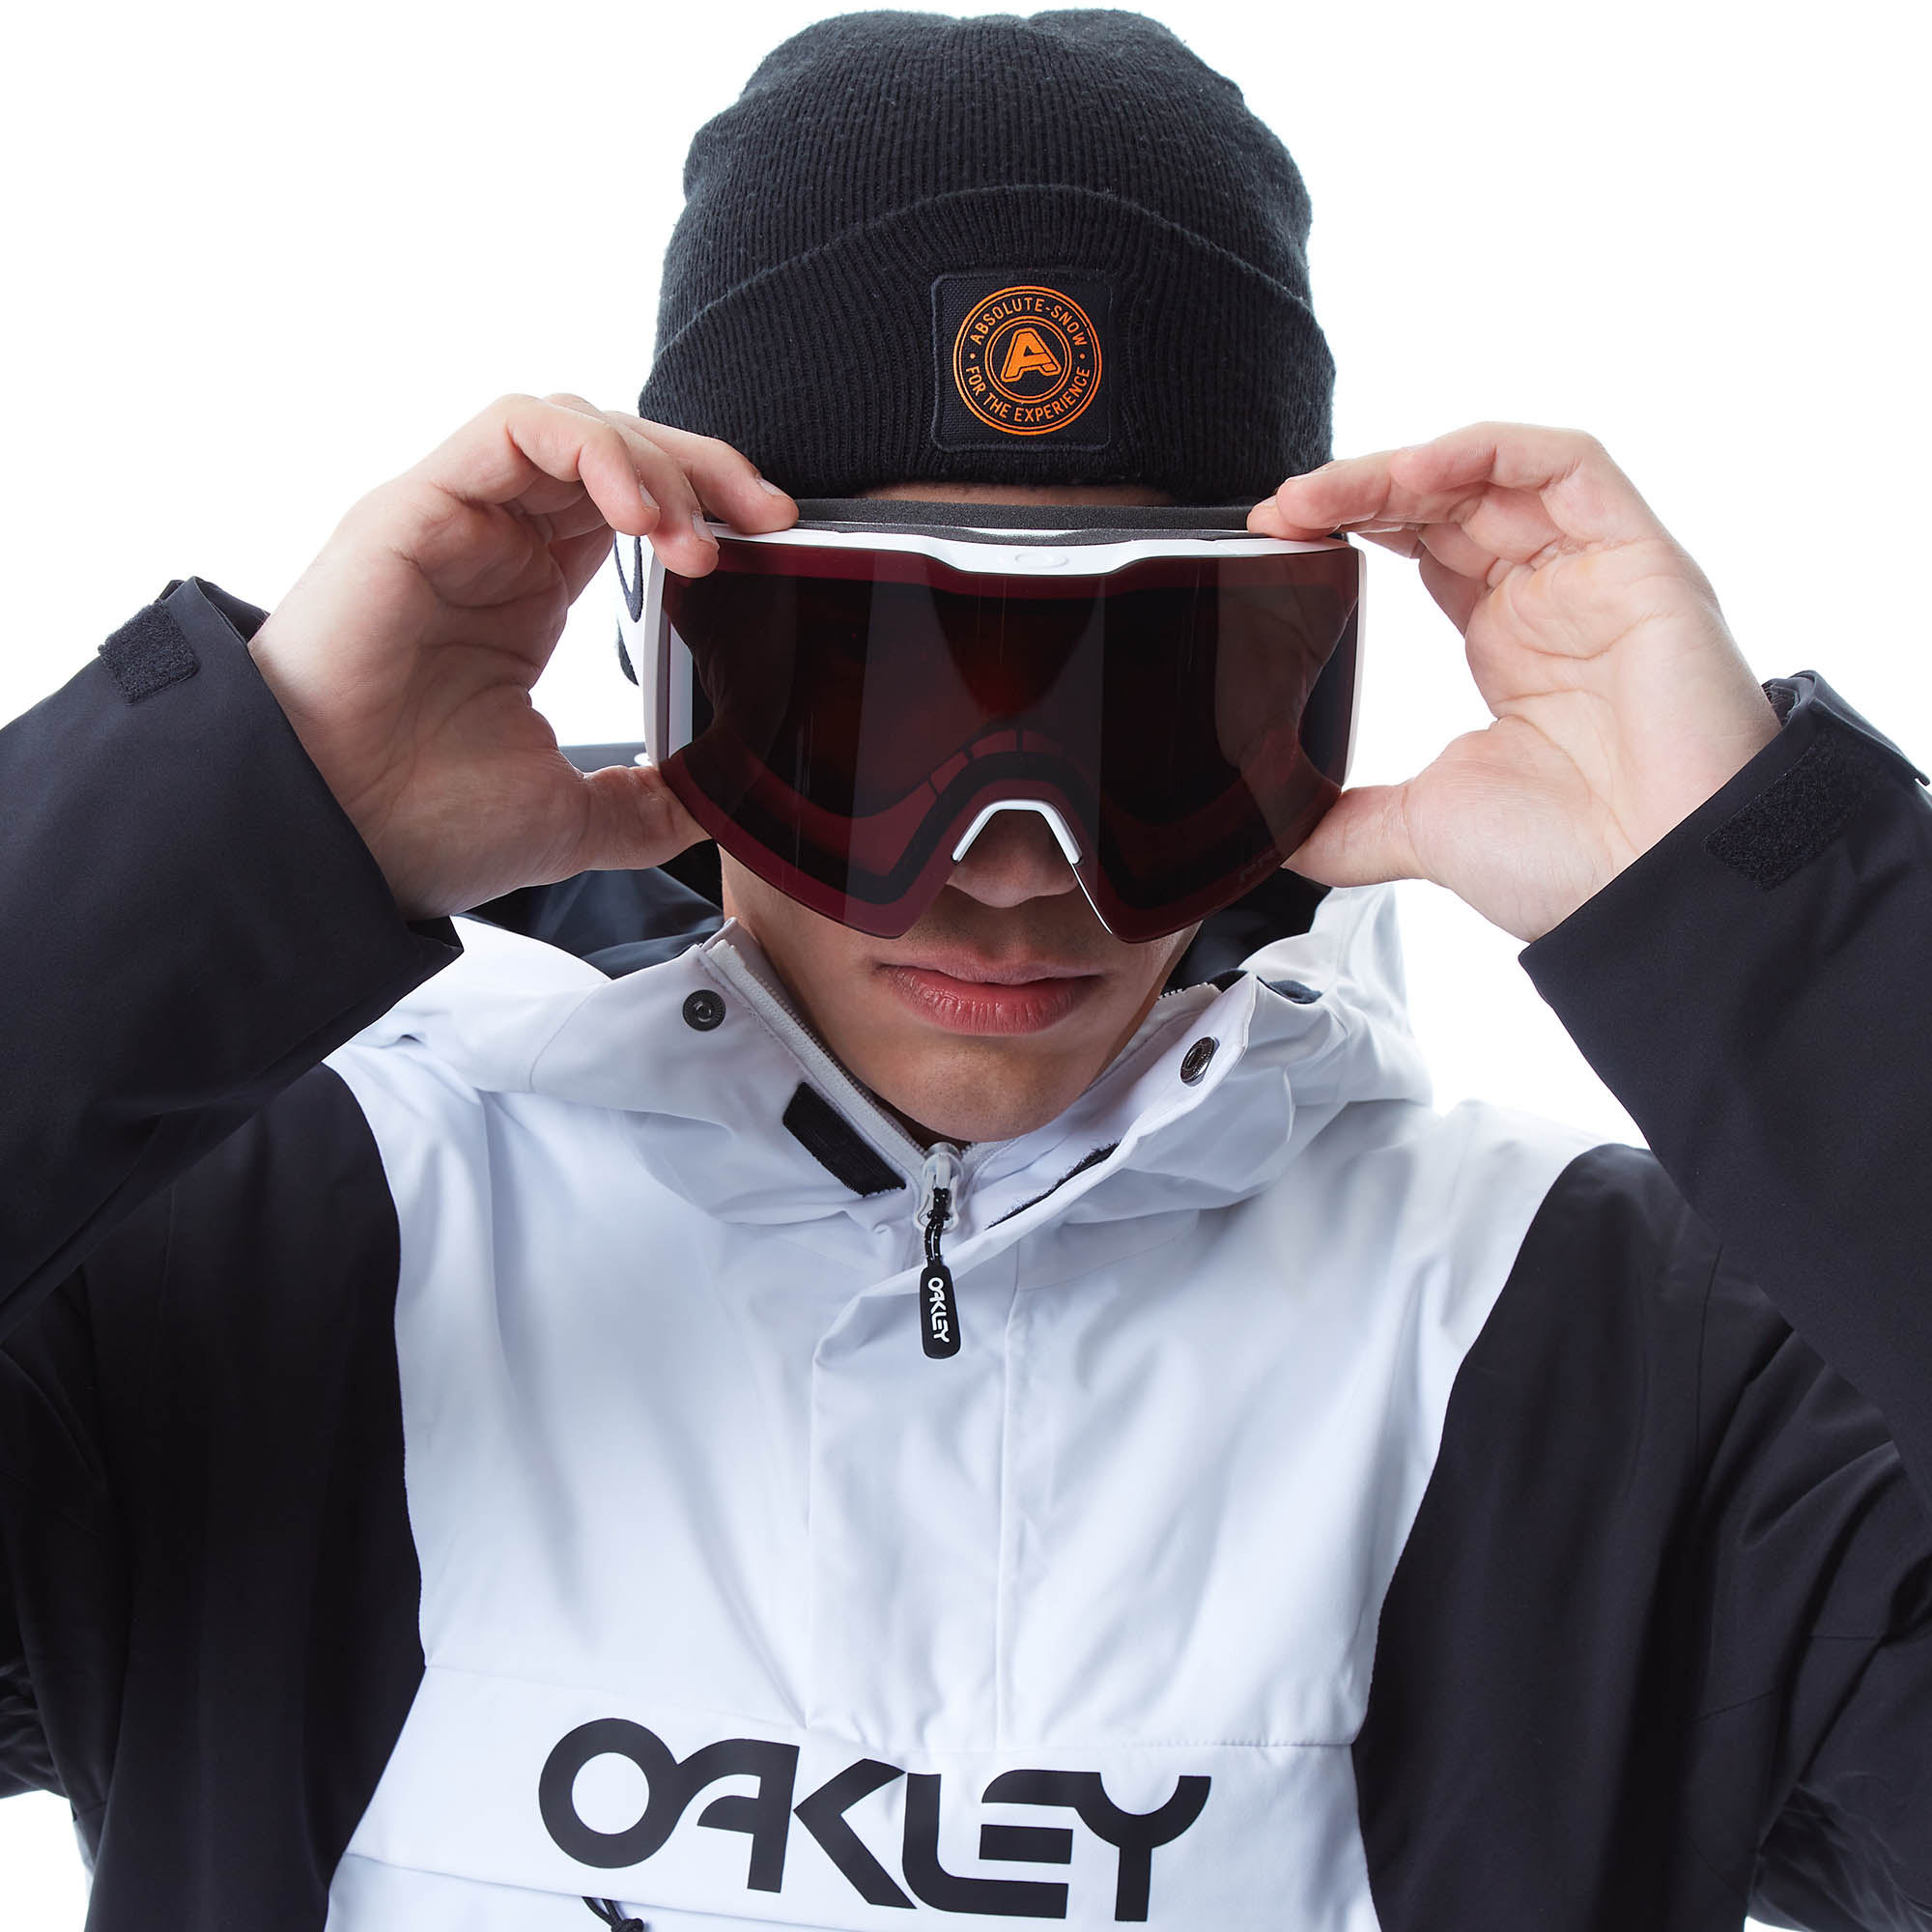 Oakley Fall Line L Snowboard/Ski Goggles